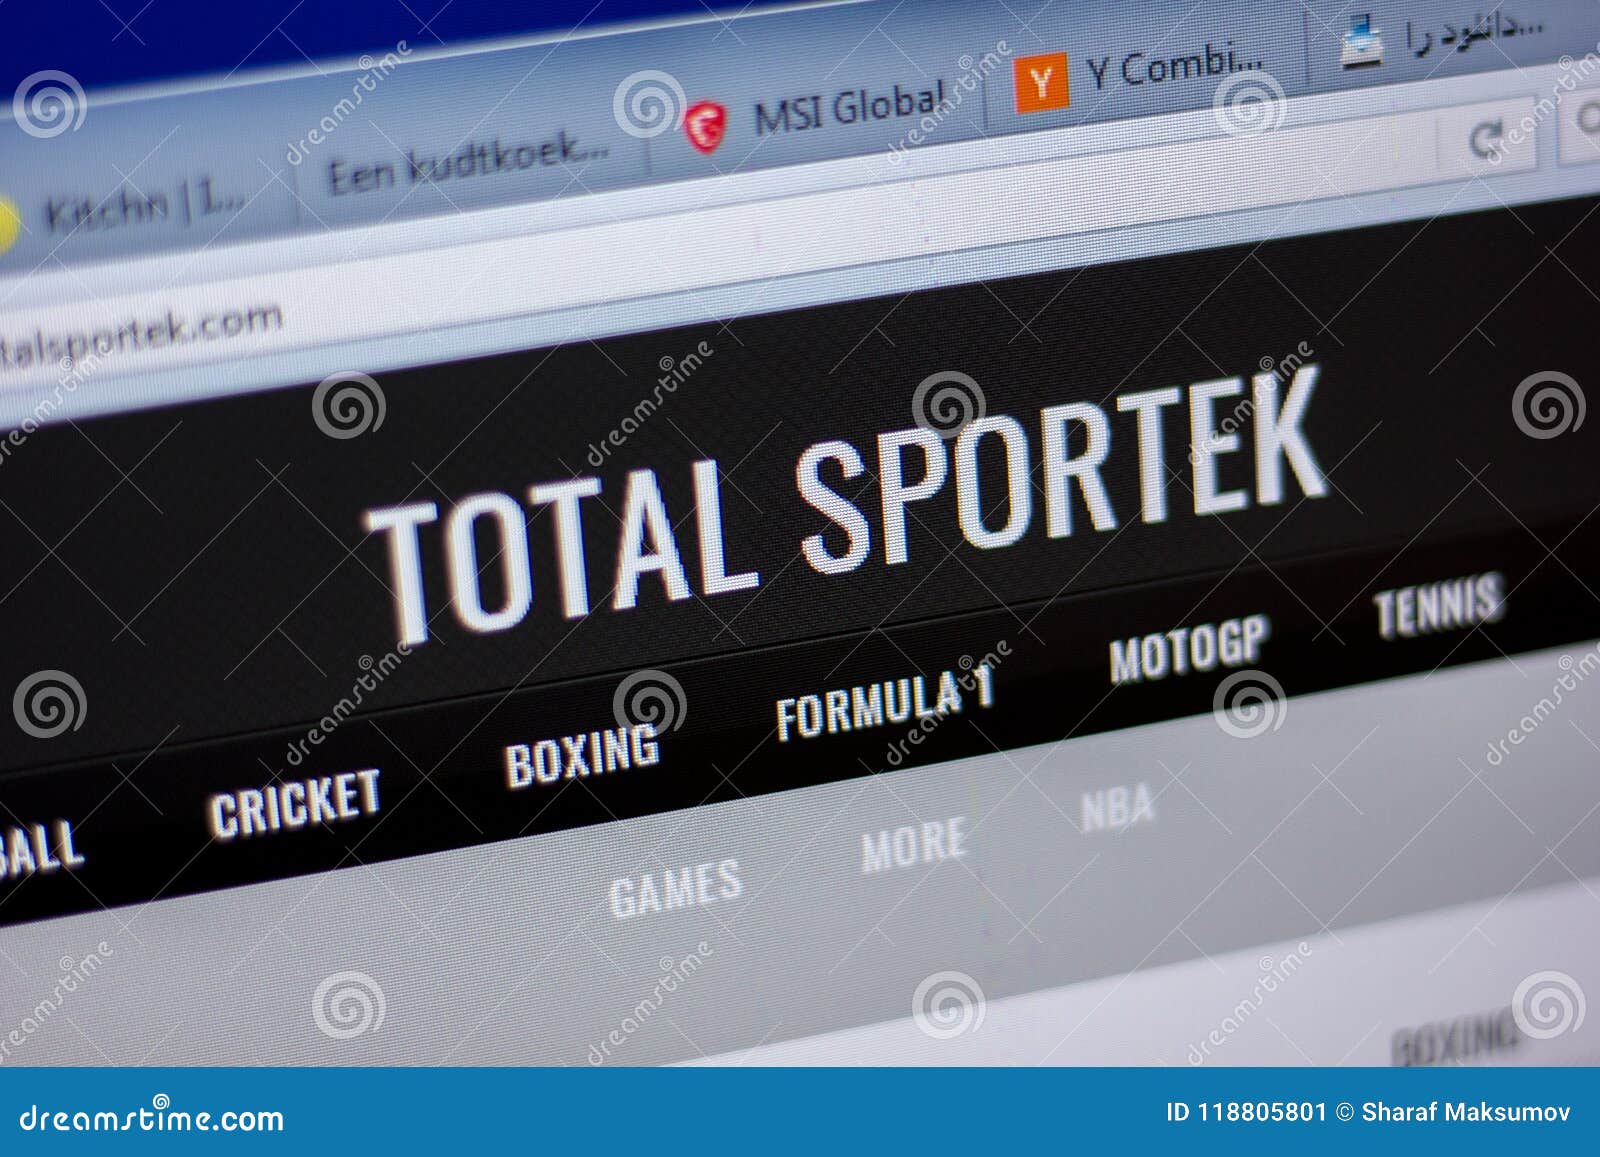 Totalsportek Website Stock Photos